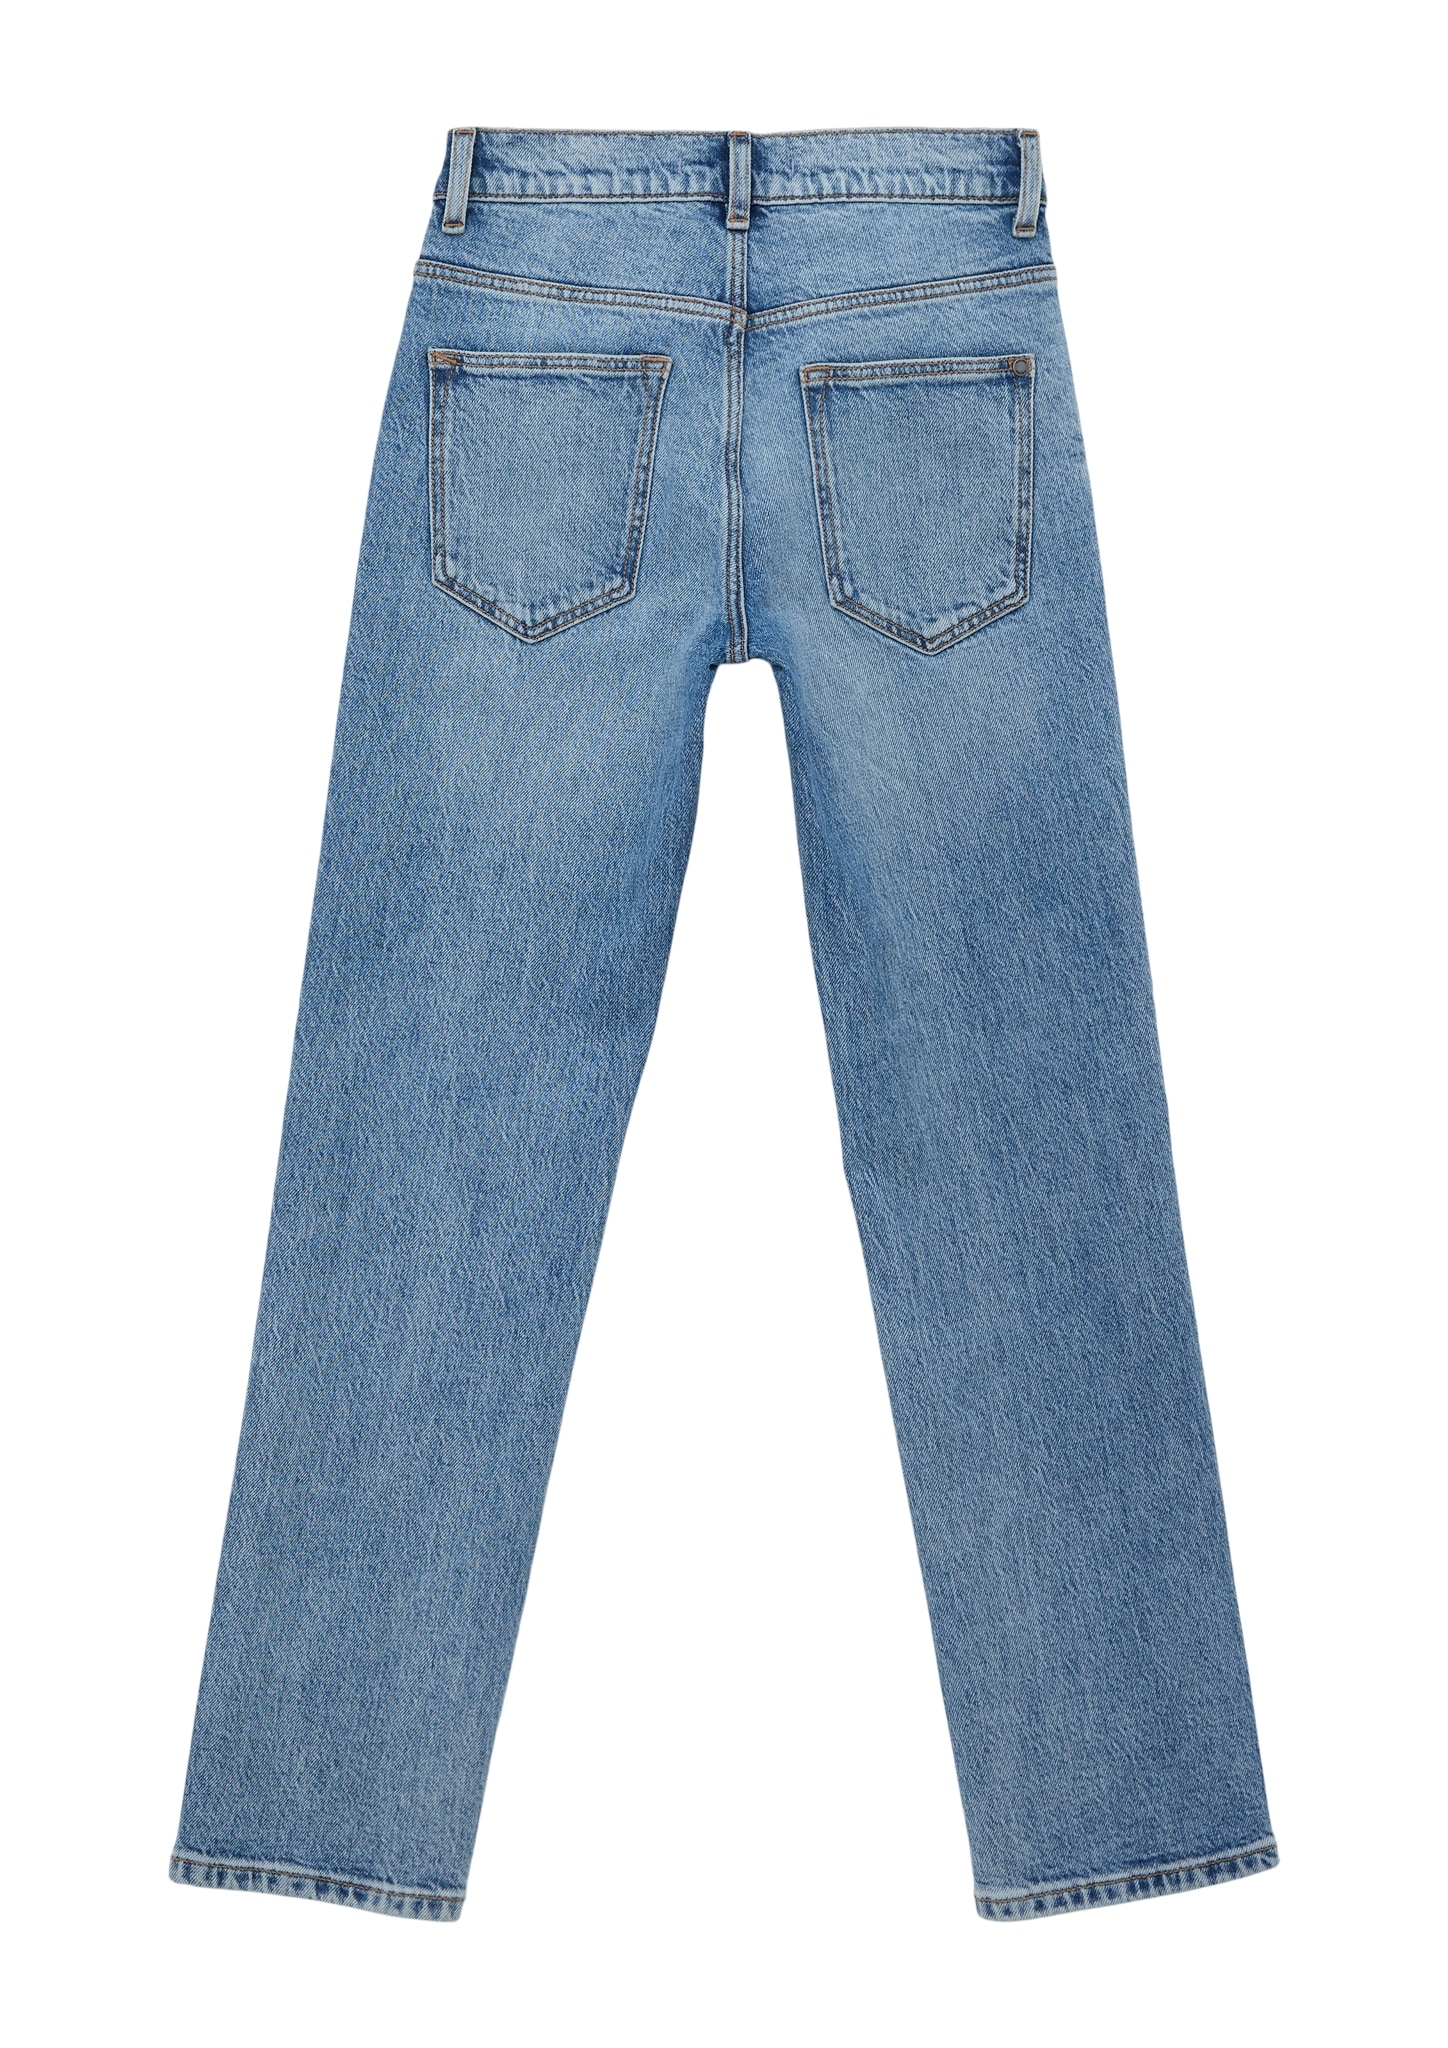 Regular-fit-Jeans, s.Oliver Junior versandkostenfrei Trendige im 5-Pocket-Stil shoppen - Mindestbestellwert ohne